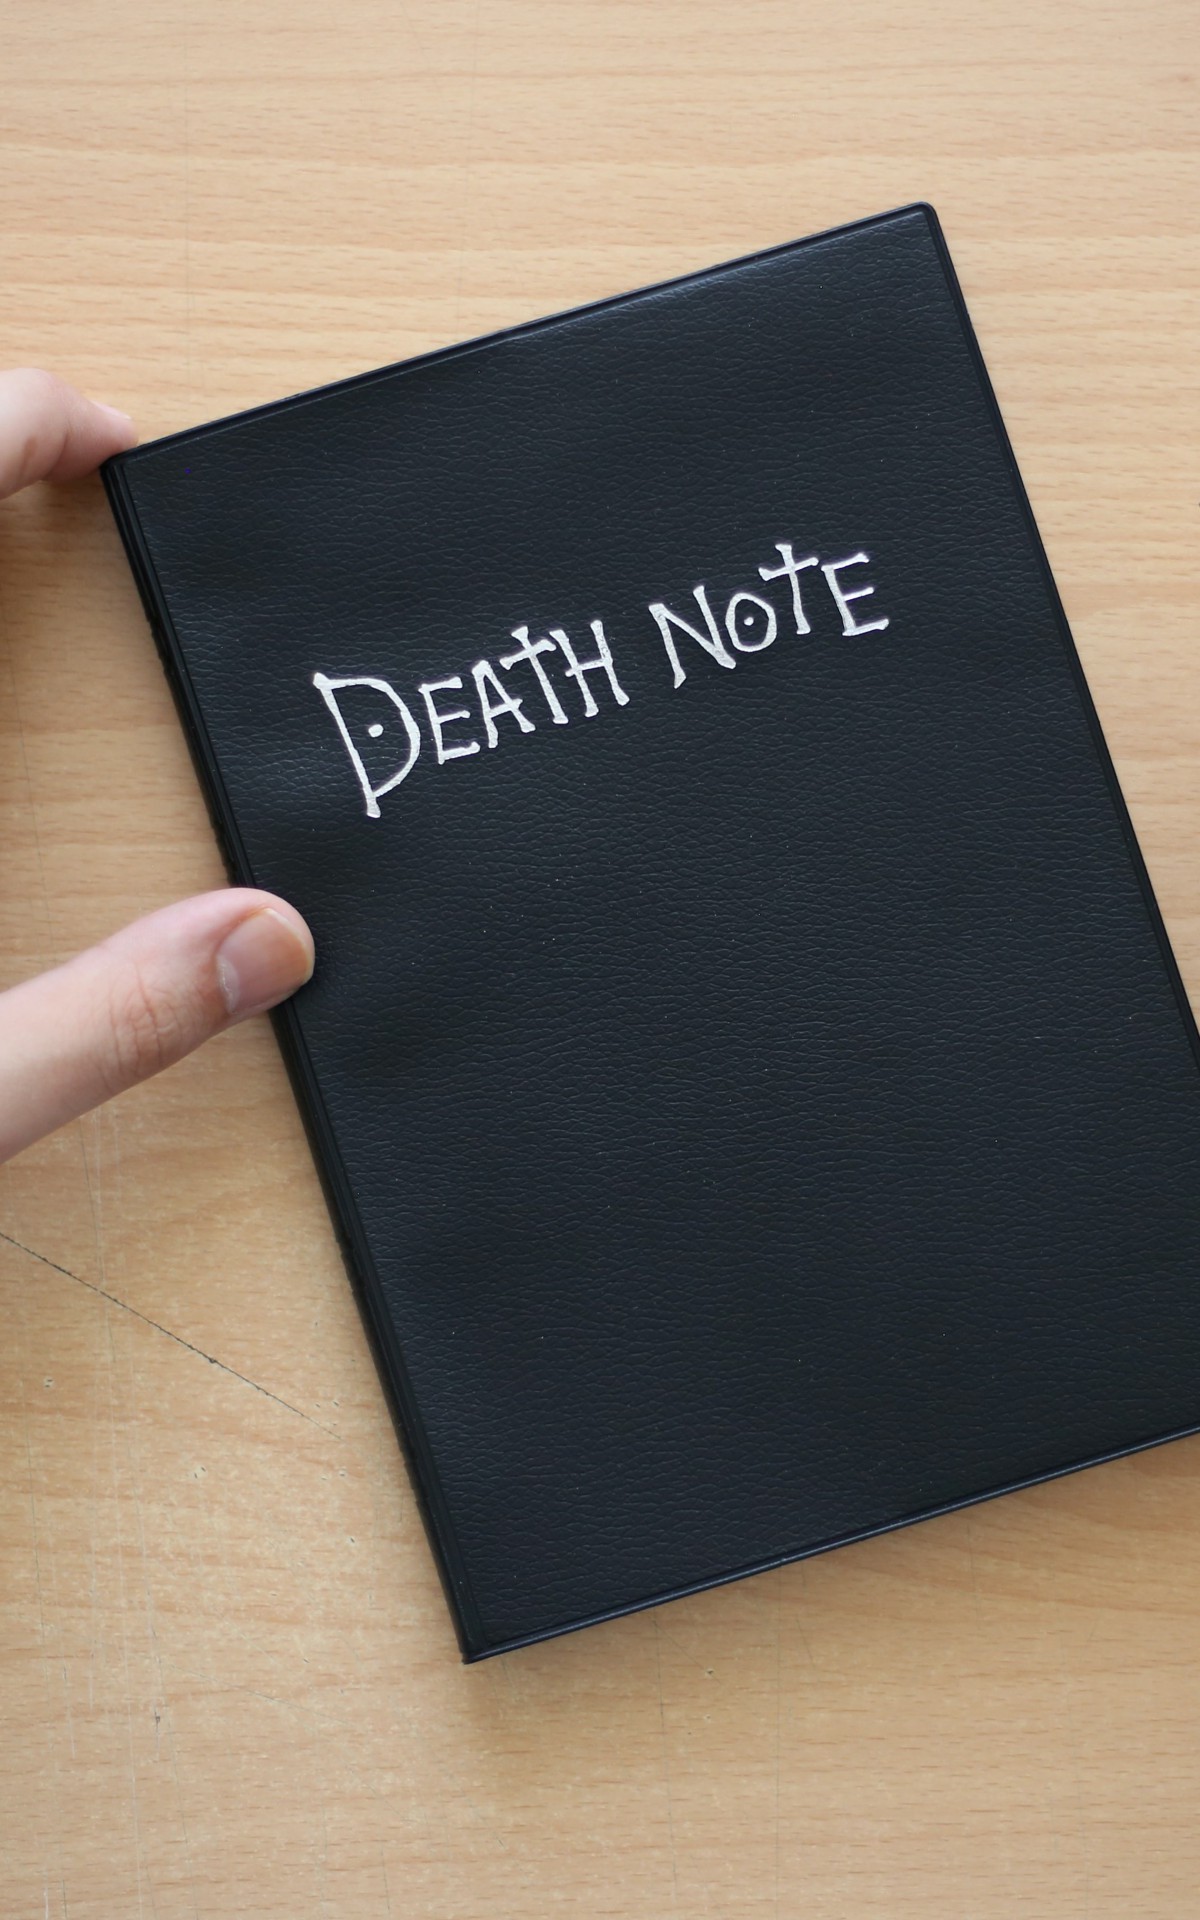 Criadores de Stranger Things farão série live-action de Death Note